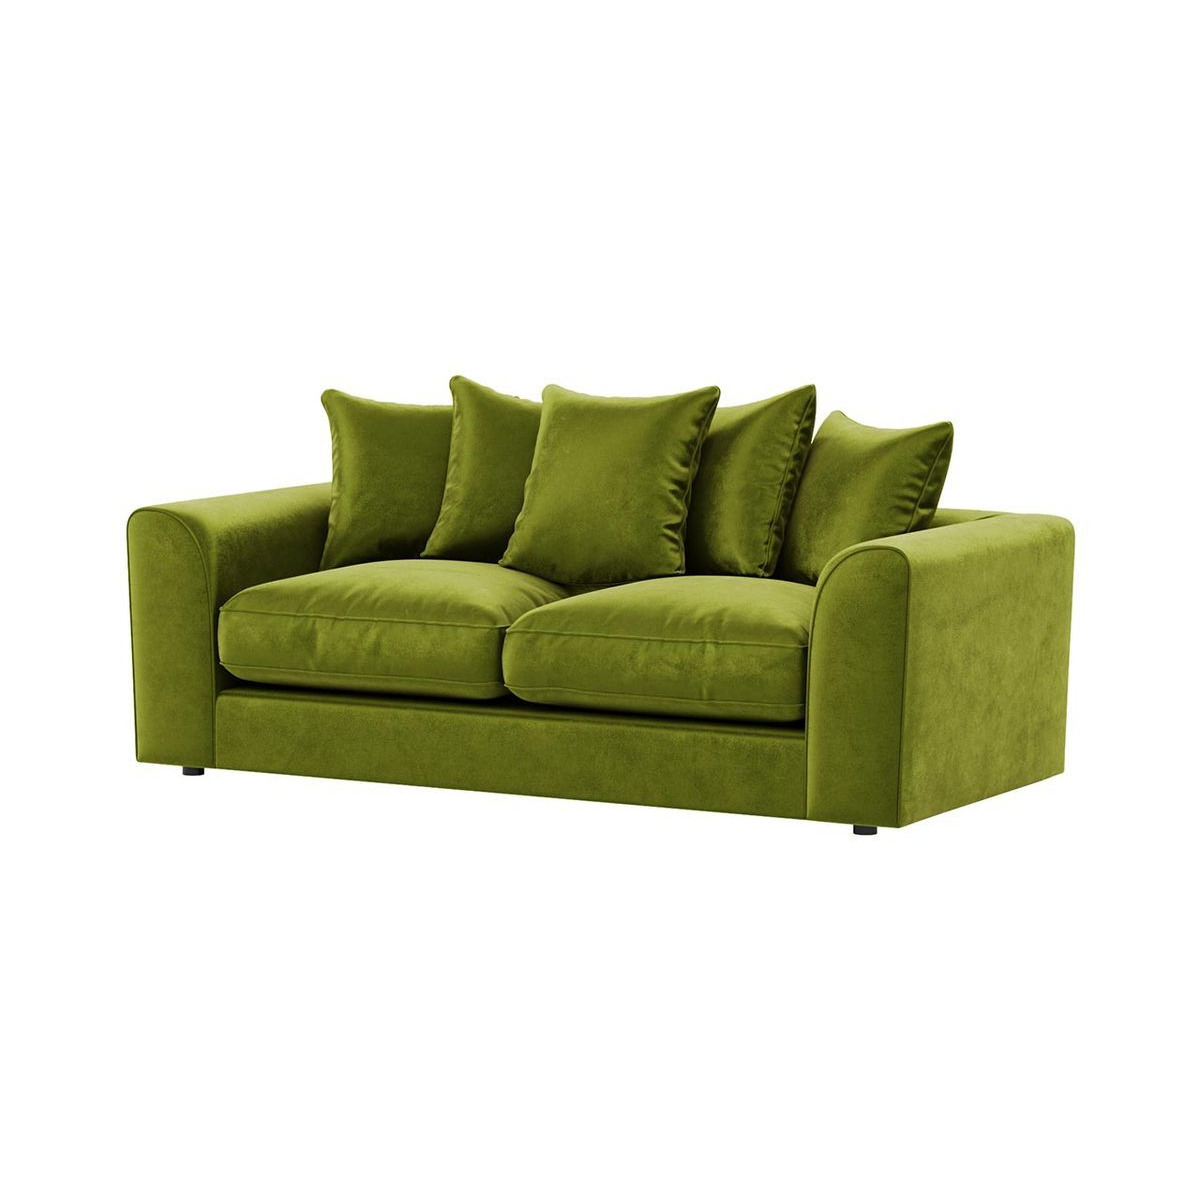 Dillon Velvet 3 Seater Sofa, olive green - image 1